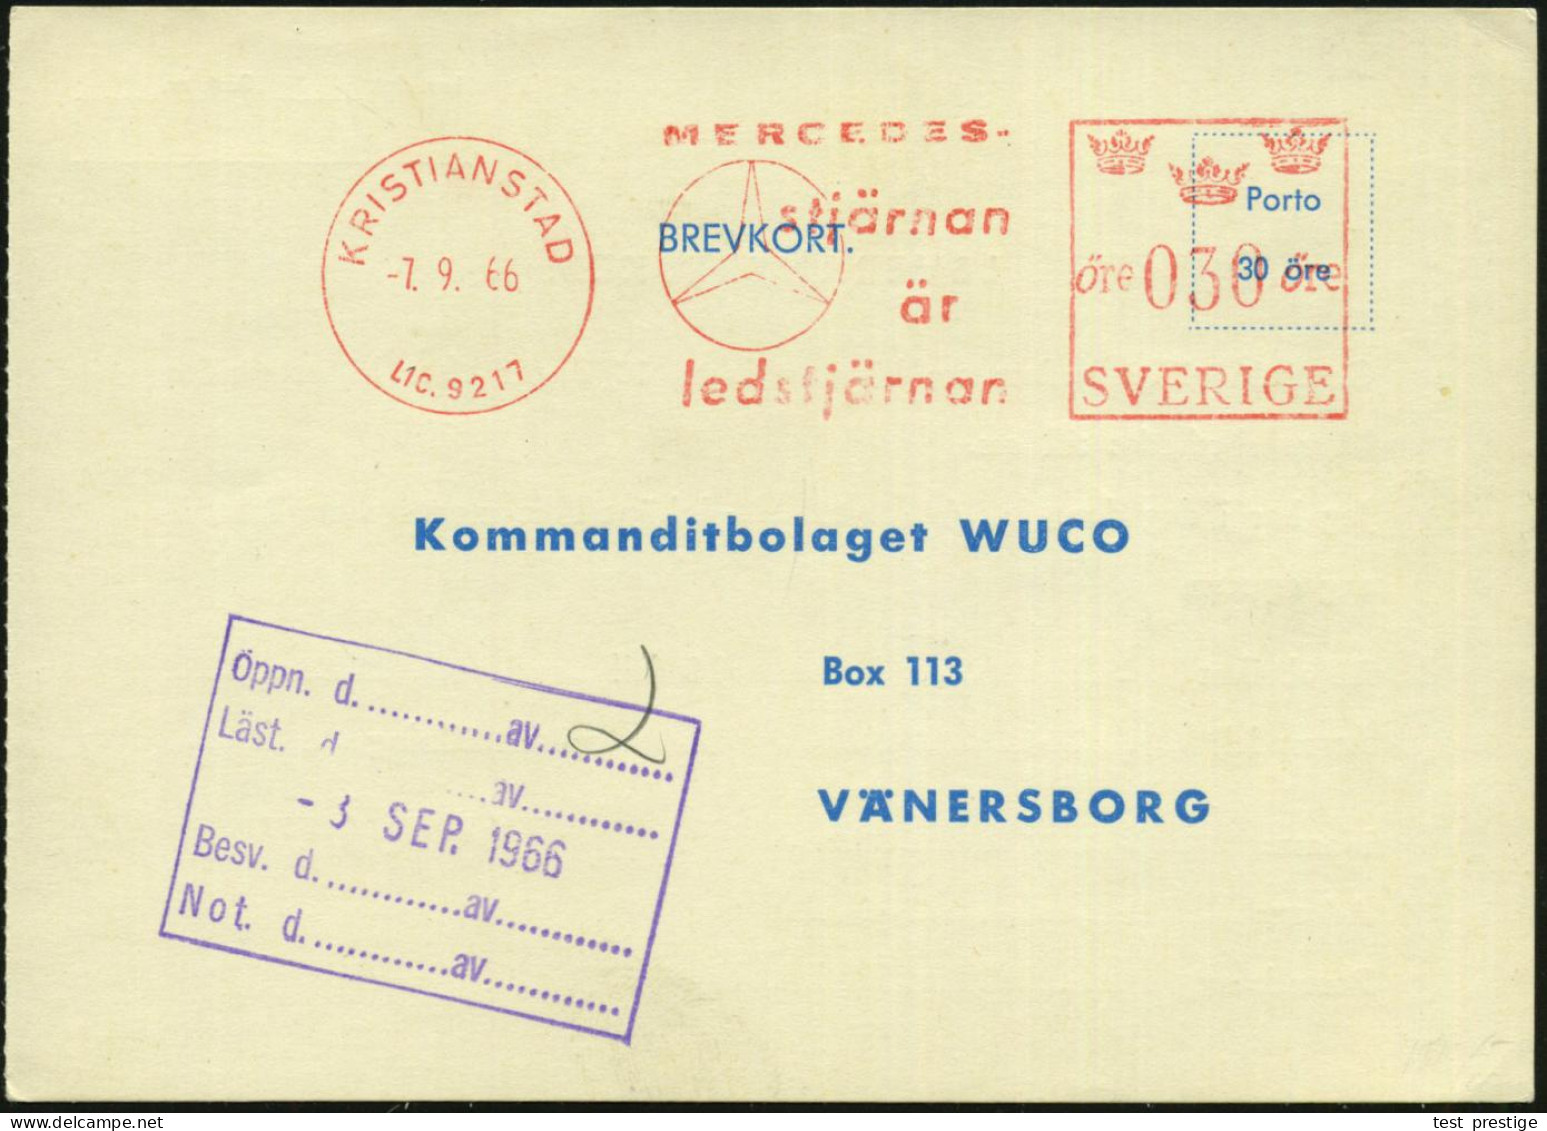 SCHWEDEN 1966 (7.9.) AFS: KRISTIANSAND/LIC.9217/MERCEDES/stjärnan.. = MB-Stern , Werkstatt-Kt. Für Einen Simca! - MERCED - KFZ